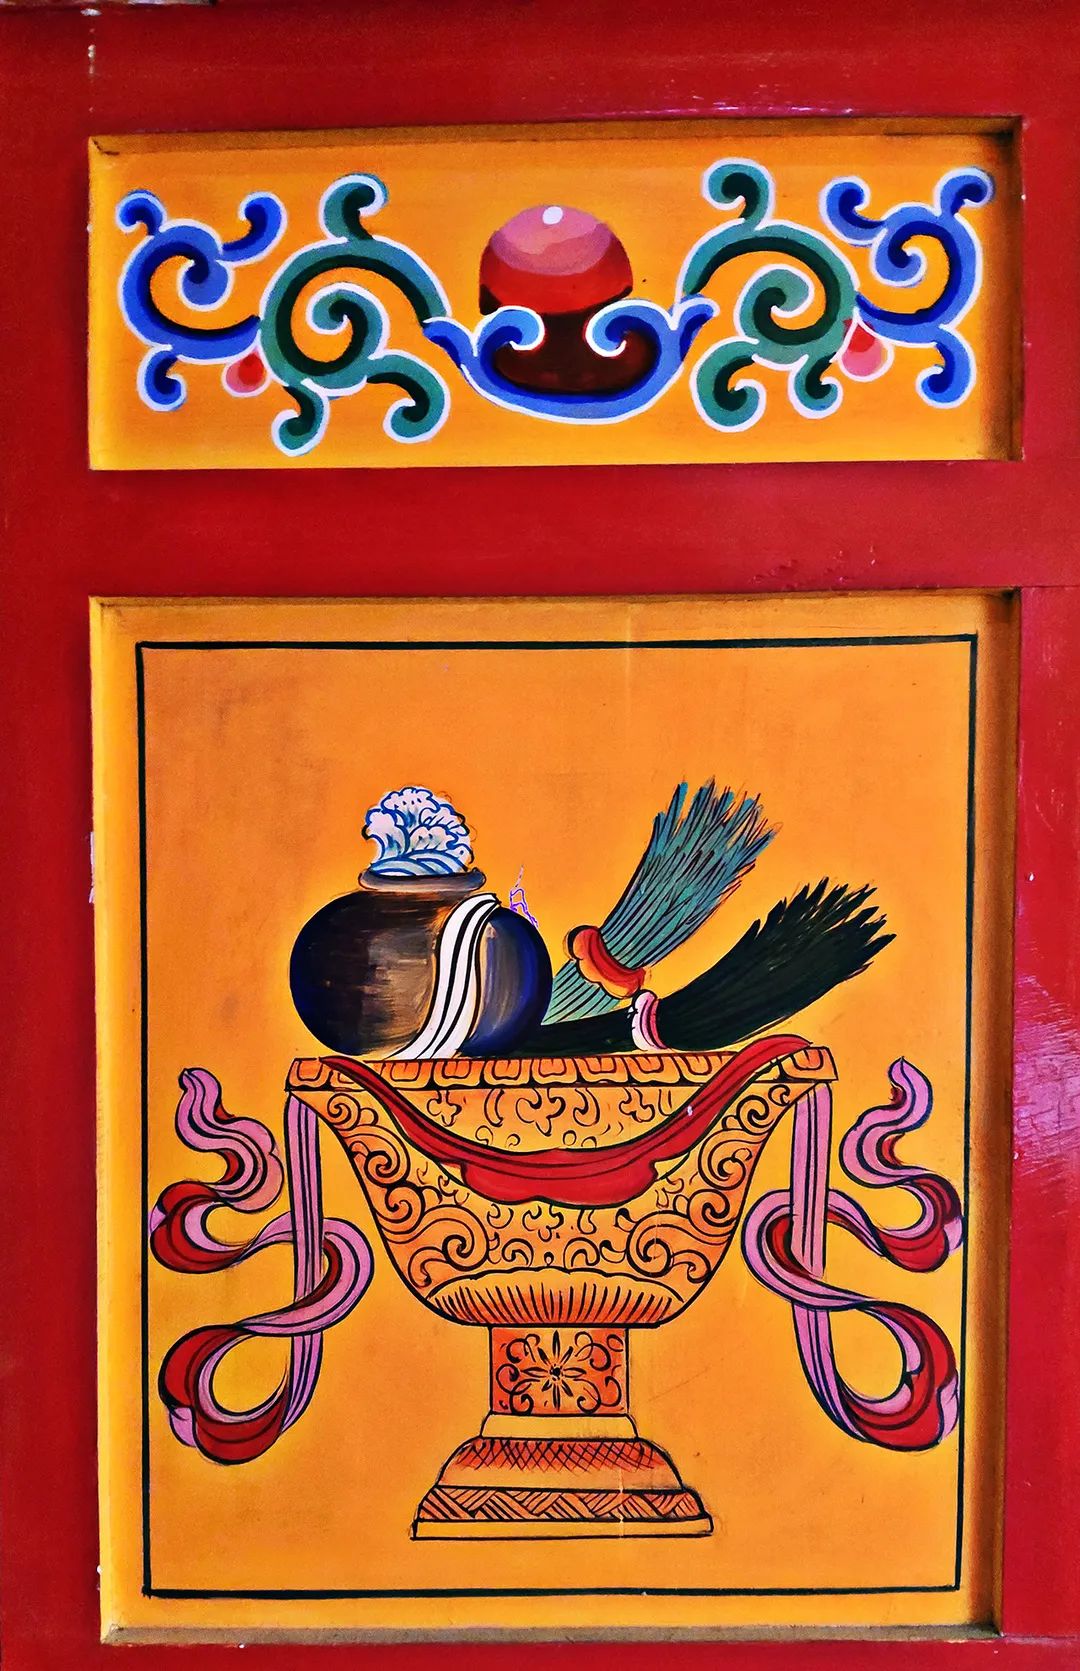 彩绘从红湾寺的建筑艺术不难看出,藏传佛教是裕固族的主要的宗教信仰